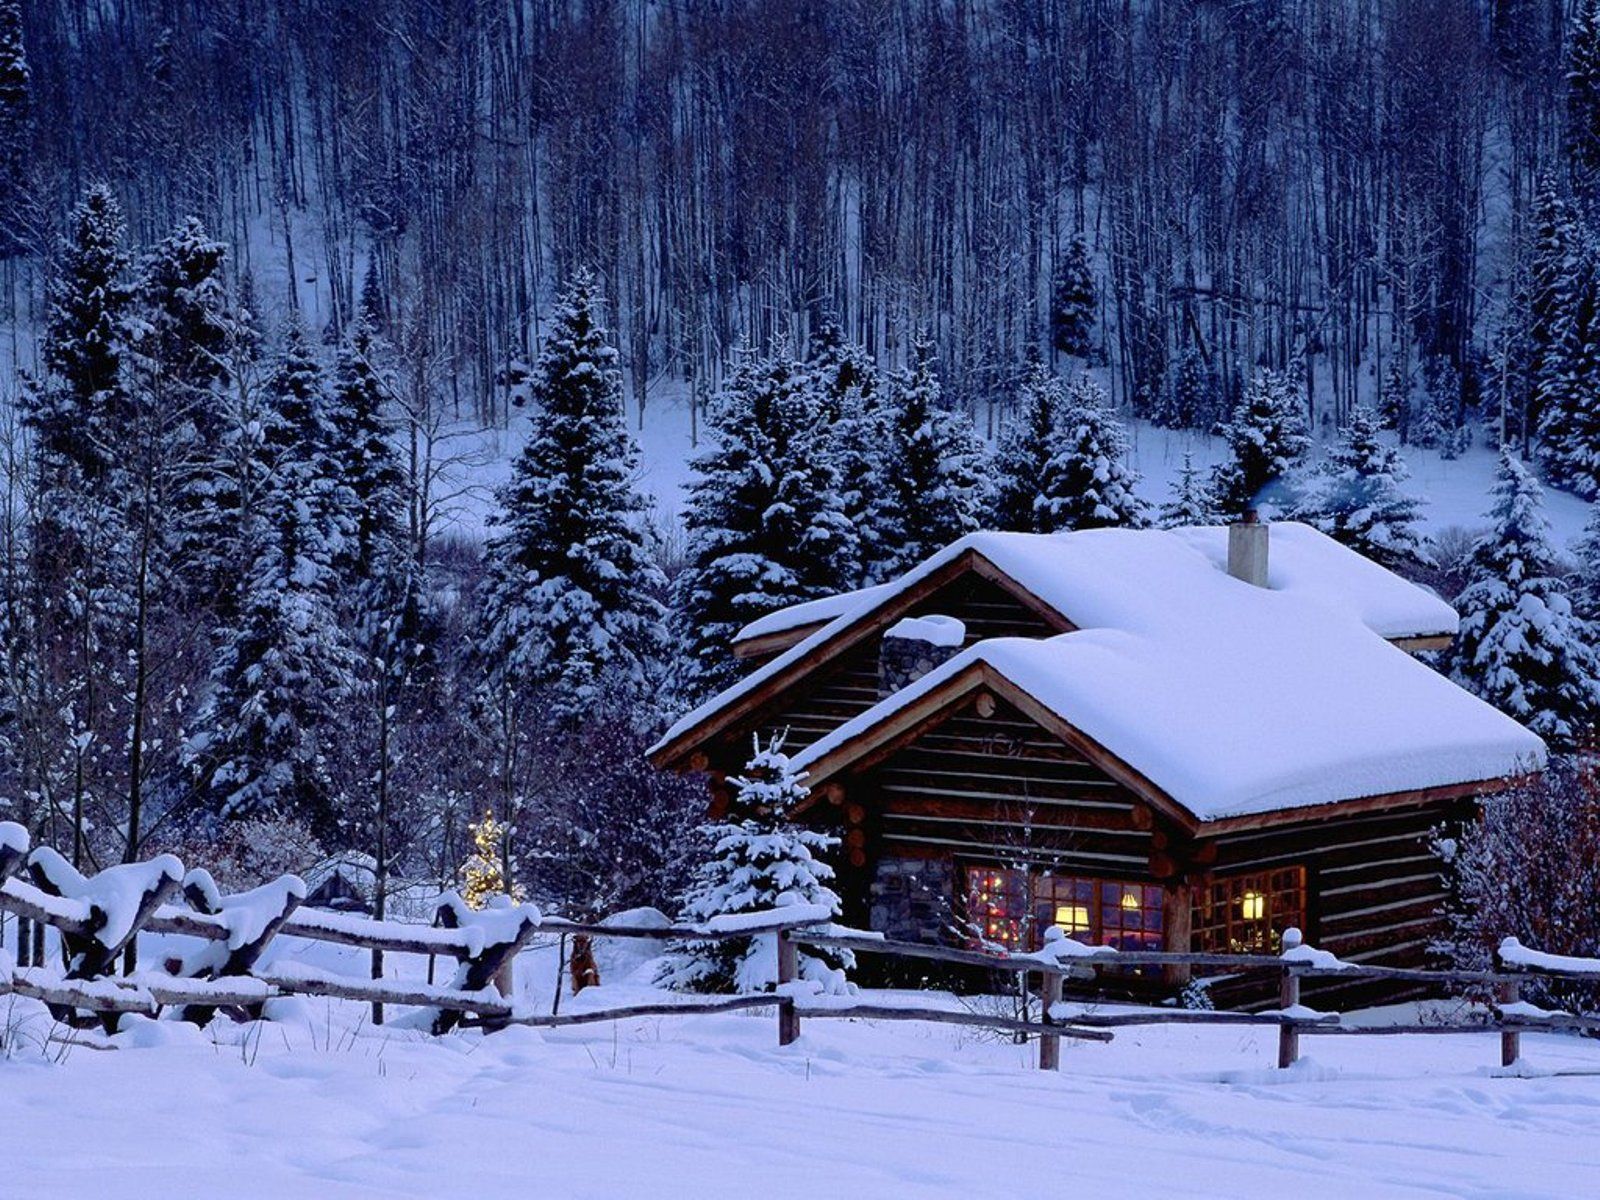 Wallpapers HD: Winter Season